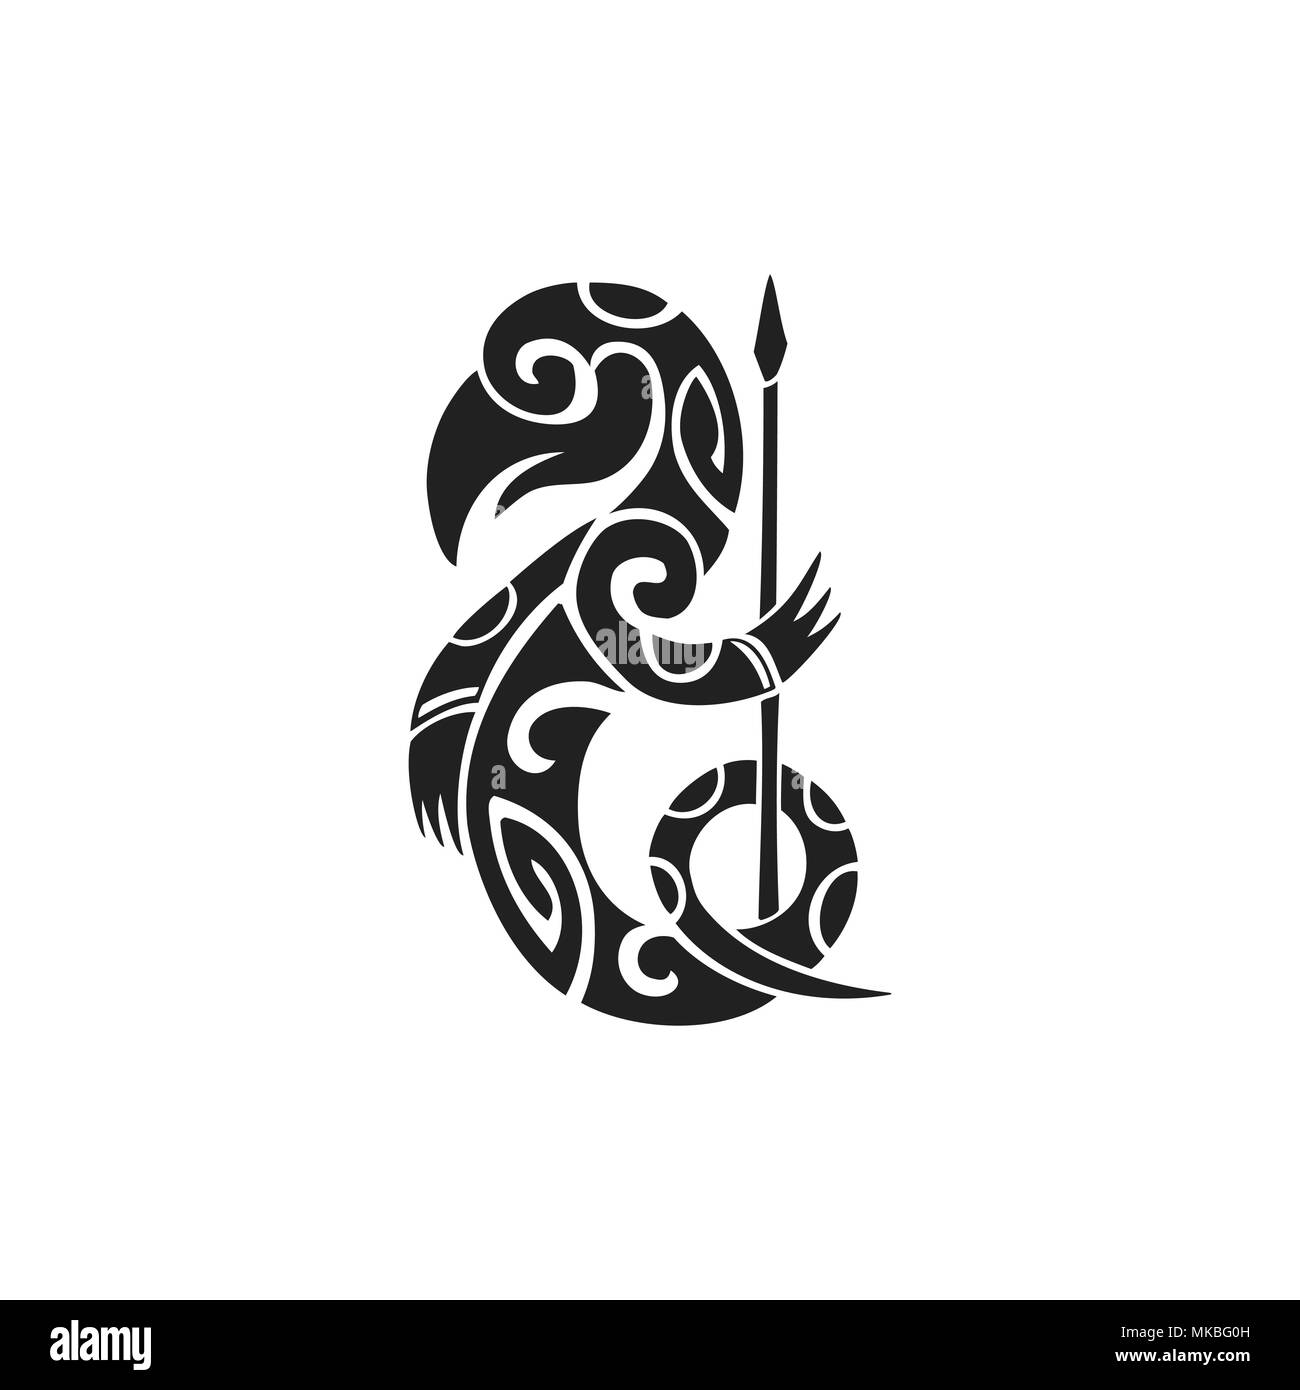 Vecteur d'encre monochrome noir dessinés à la main, symbole de l'art folklorique polynésienne autochtone créature mythologique Taniwha illustration isolé sur fond blanc Illustration de Vecteur